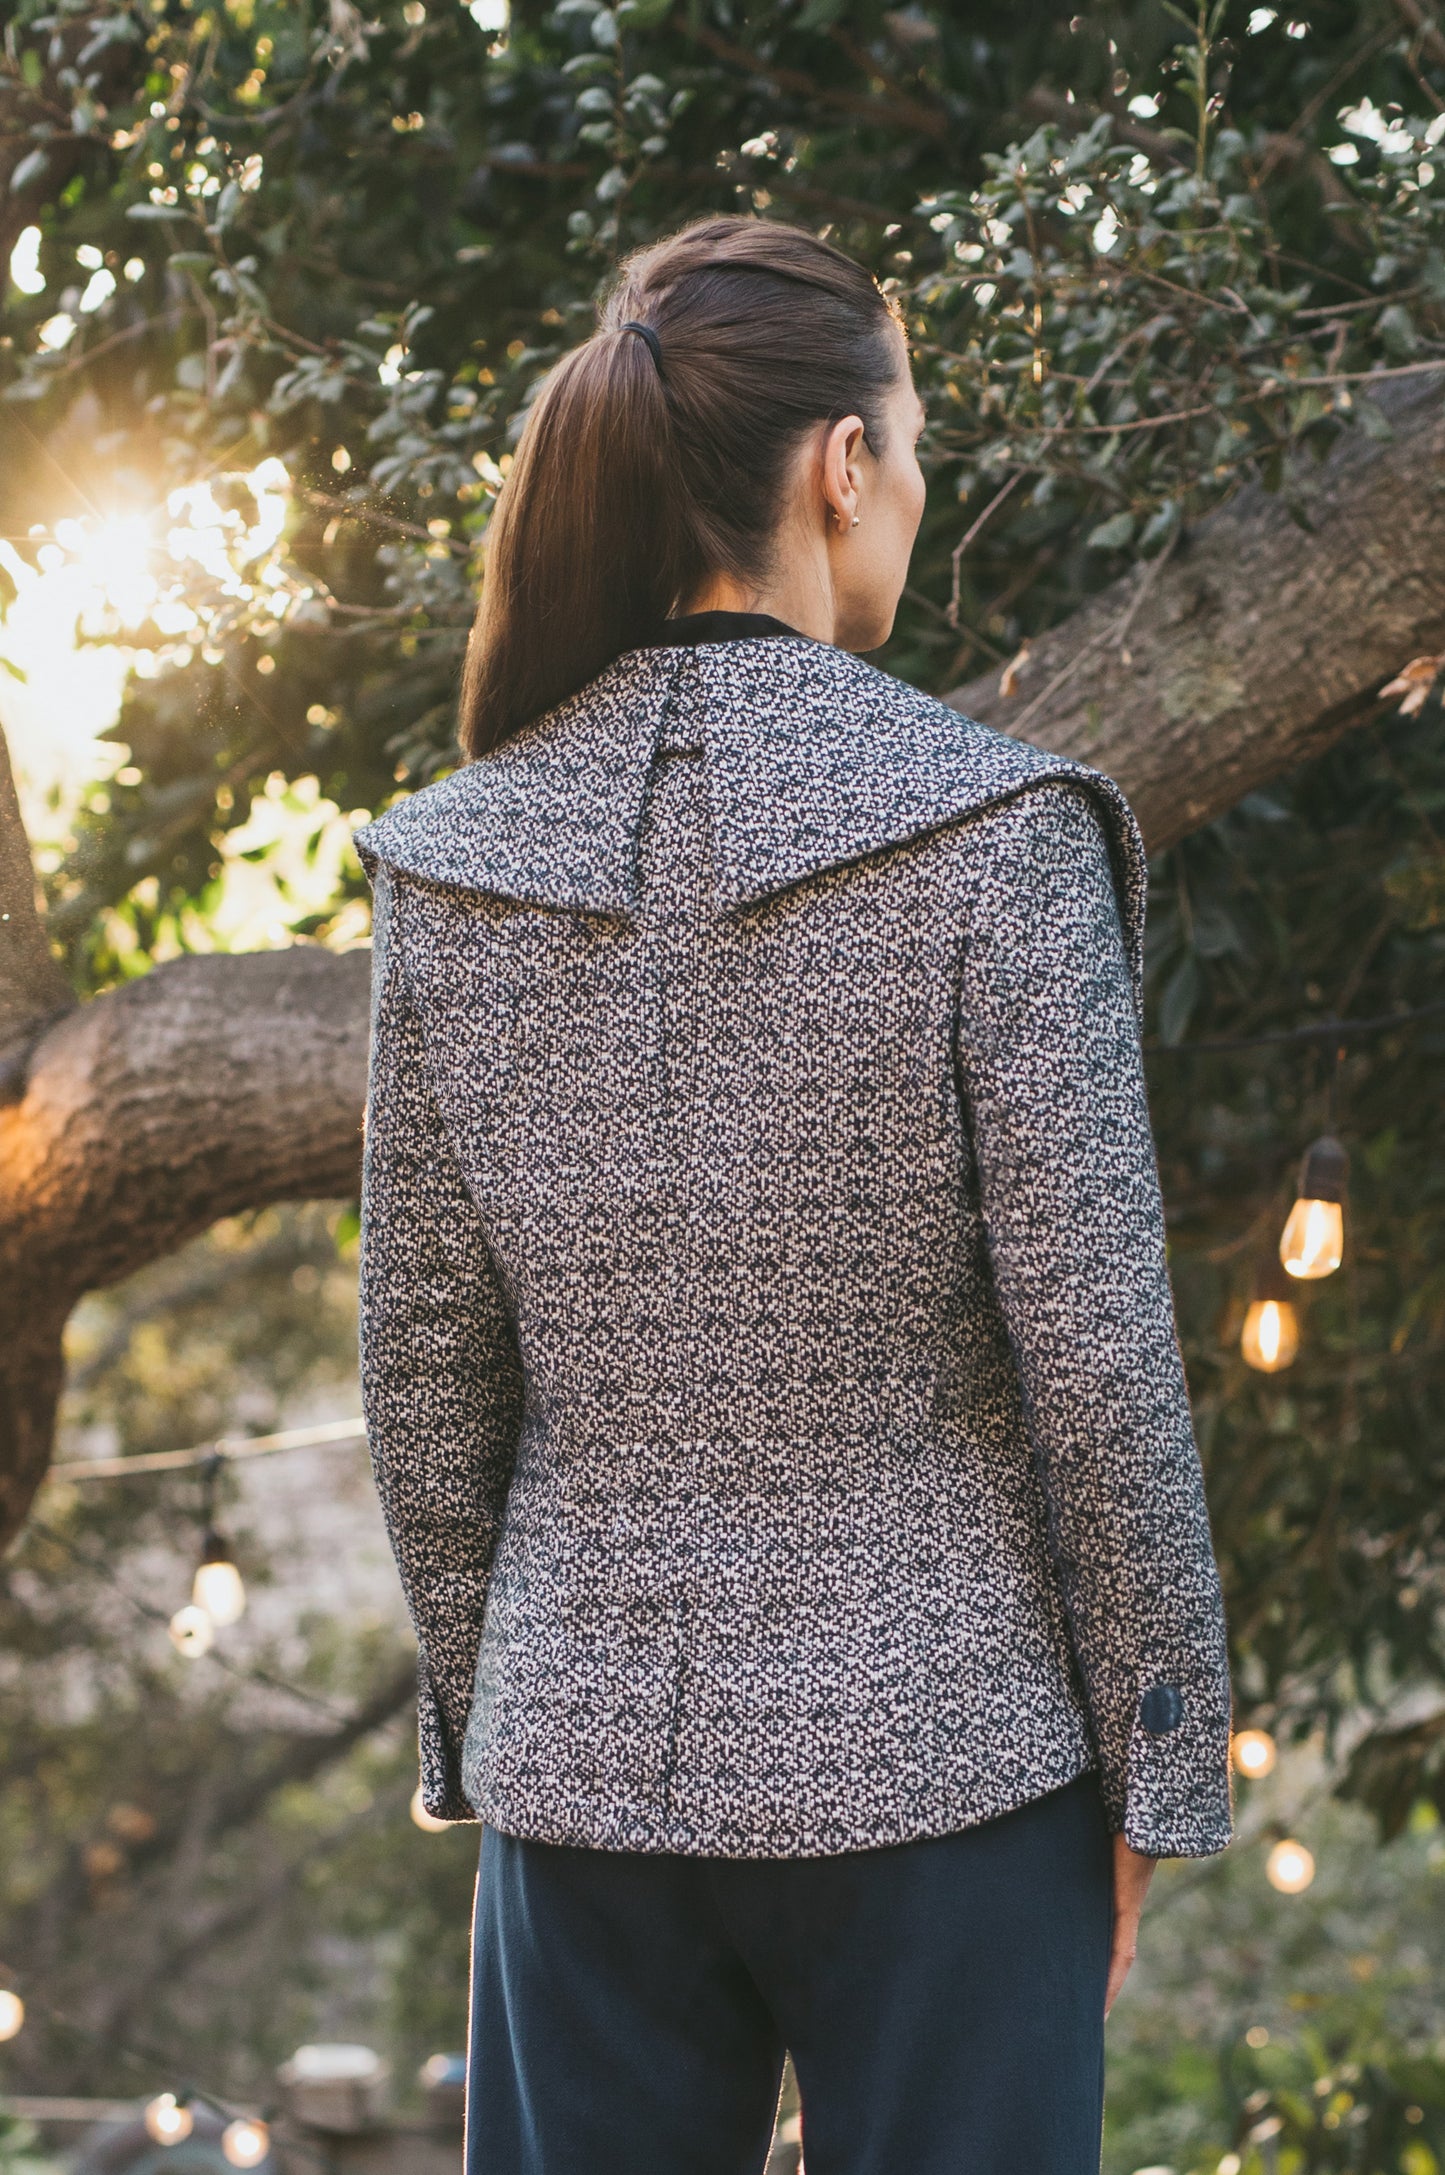 The Lady Tweed Hemp/Wool Jacket